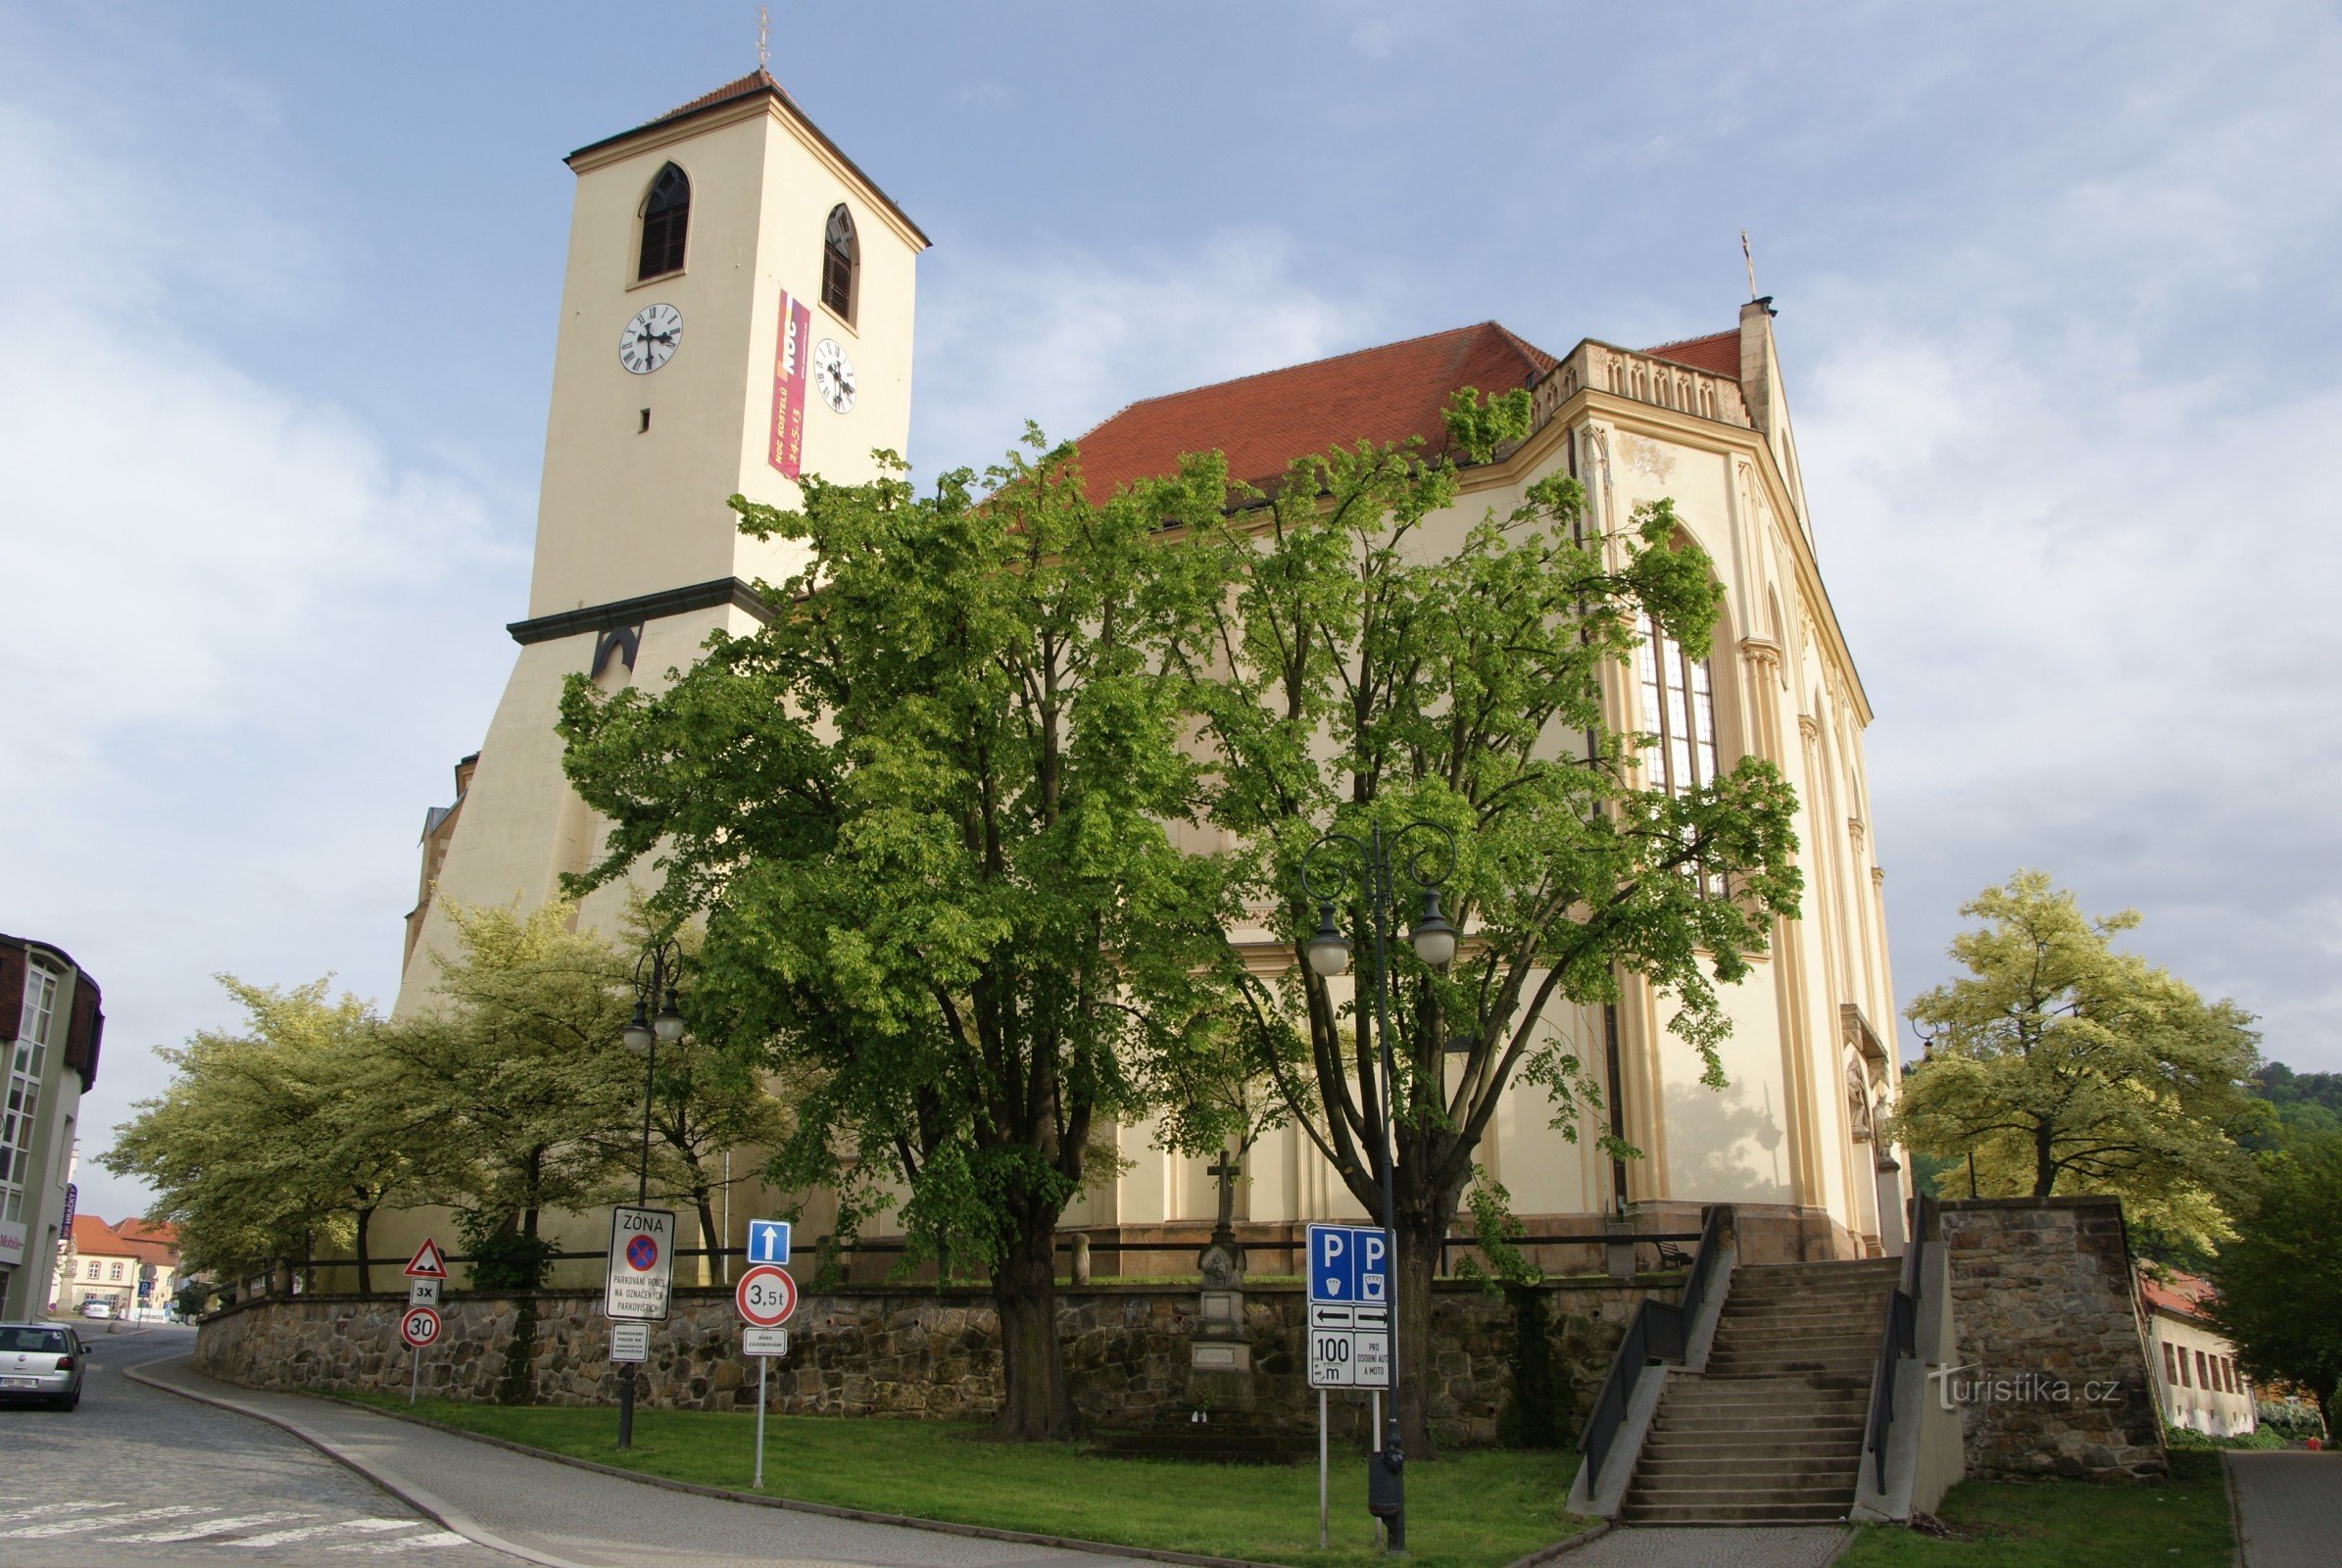 Босковице - церковь св. Якуба ул.